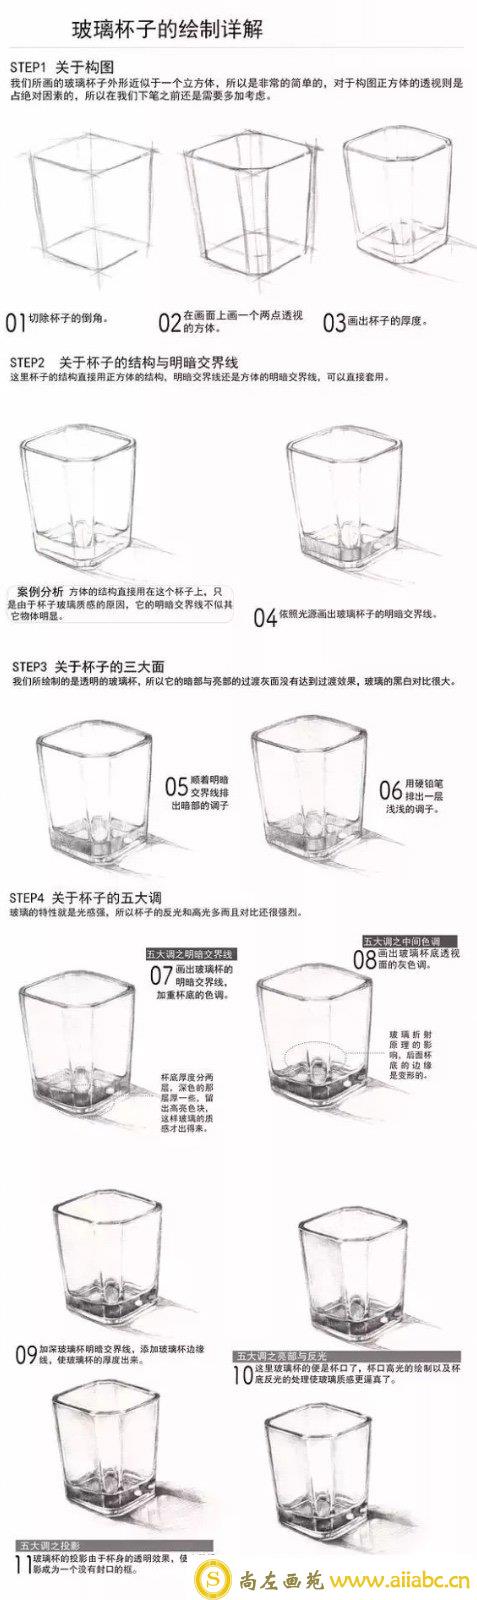 素描透明玻璃杯子绘制步骤详解